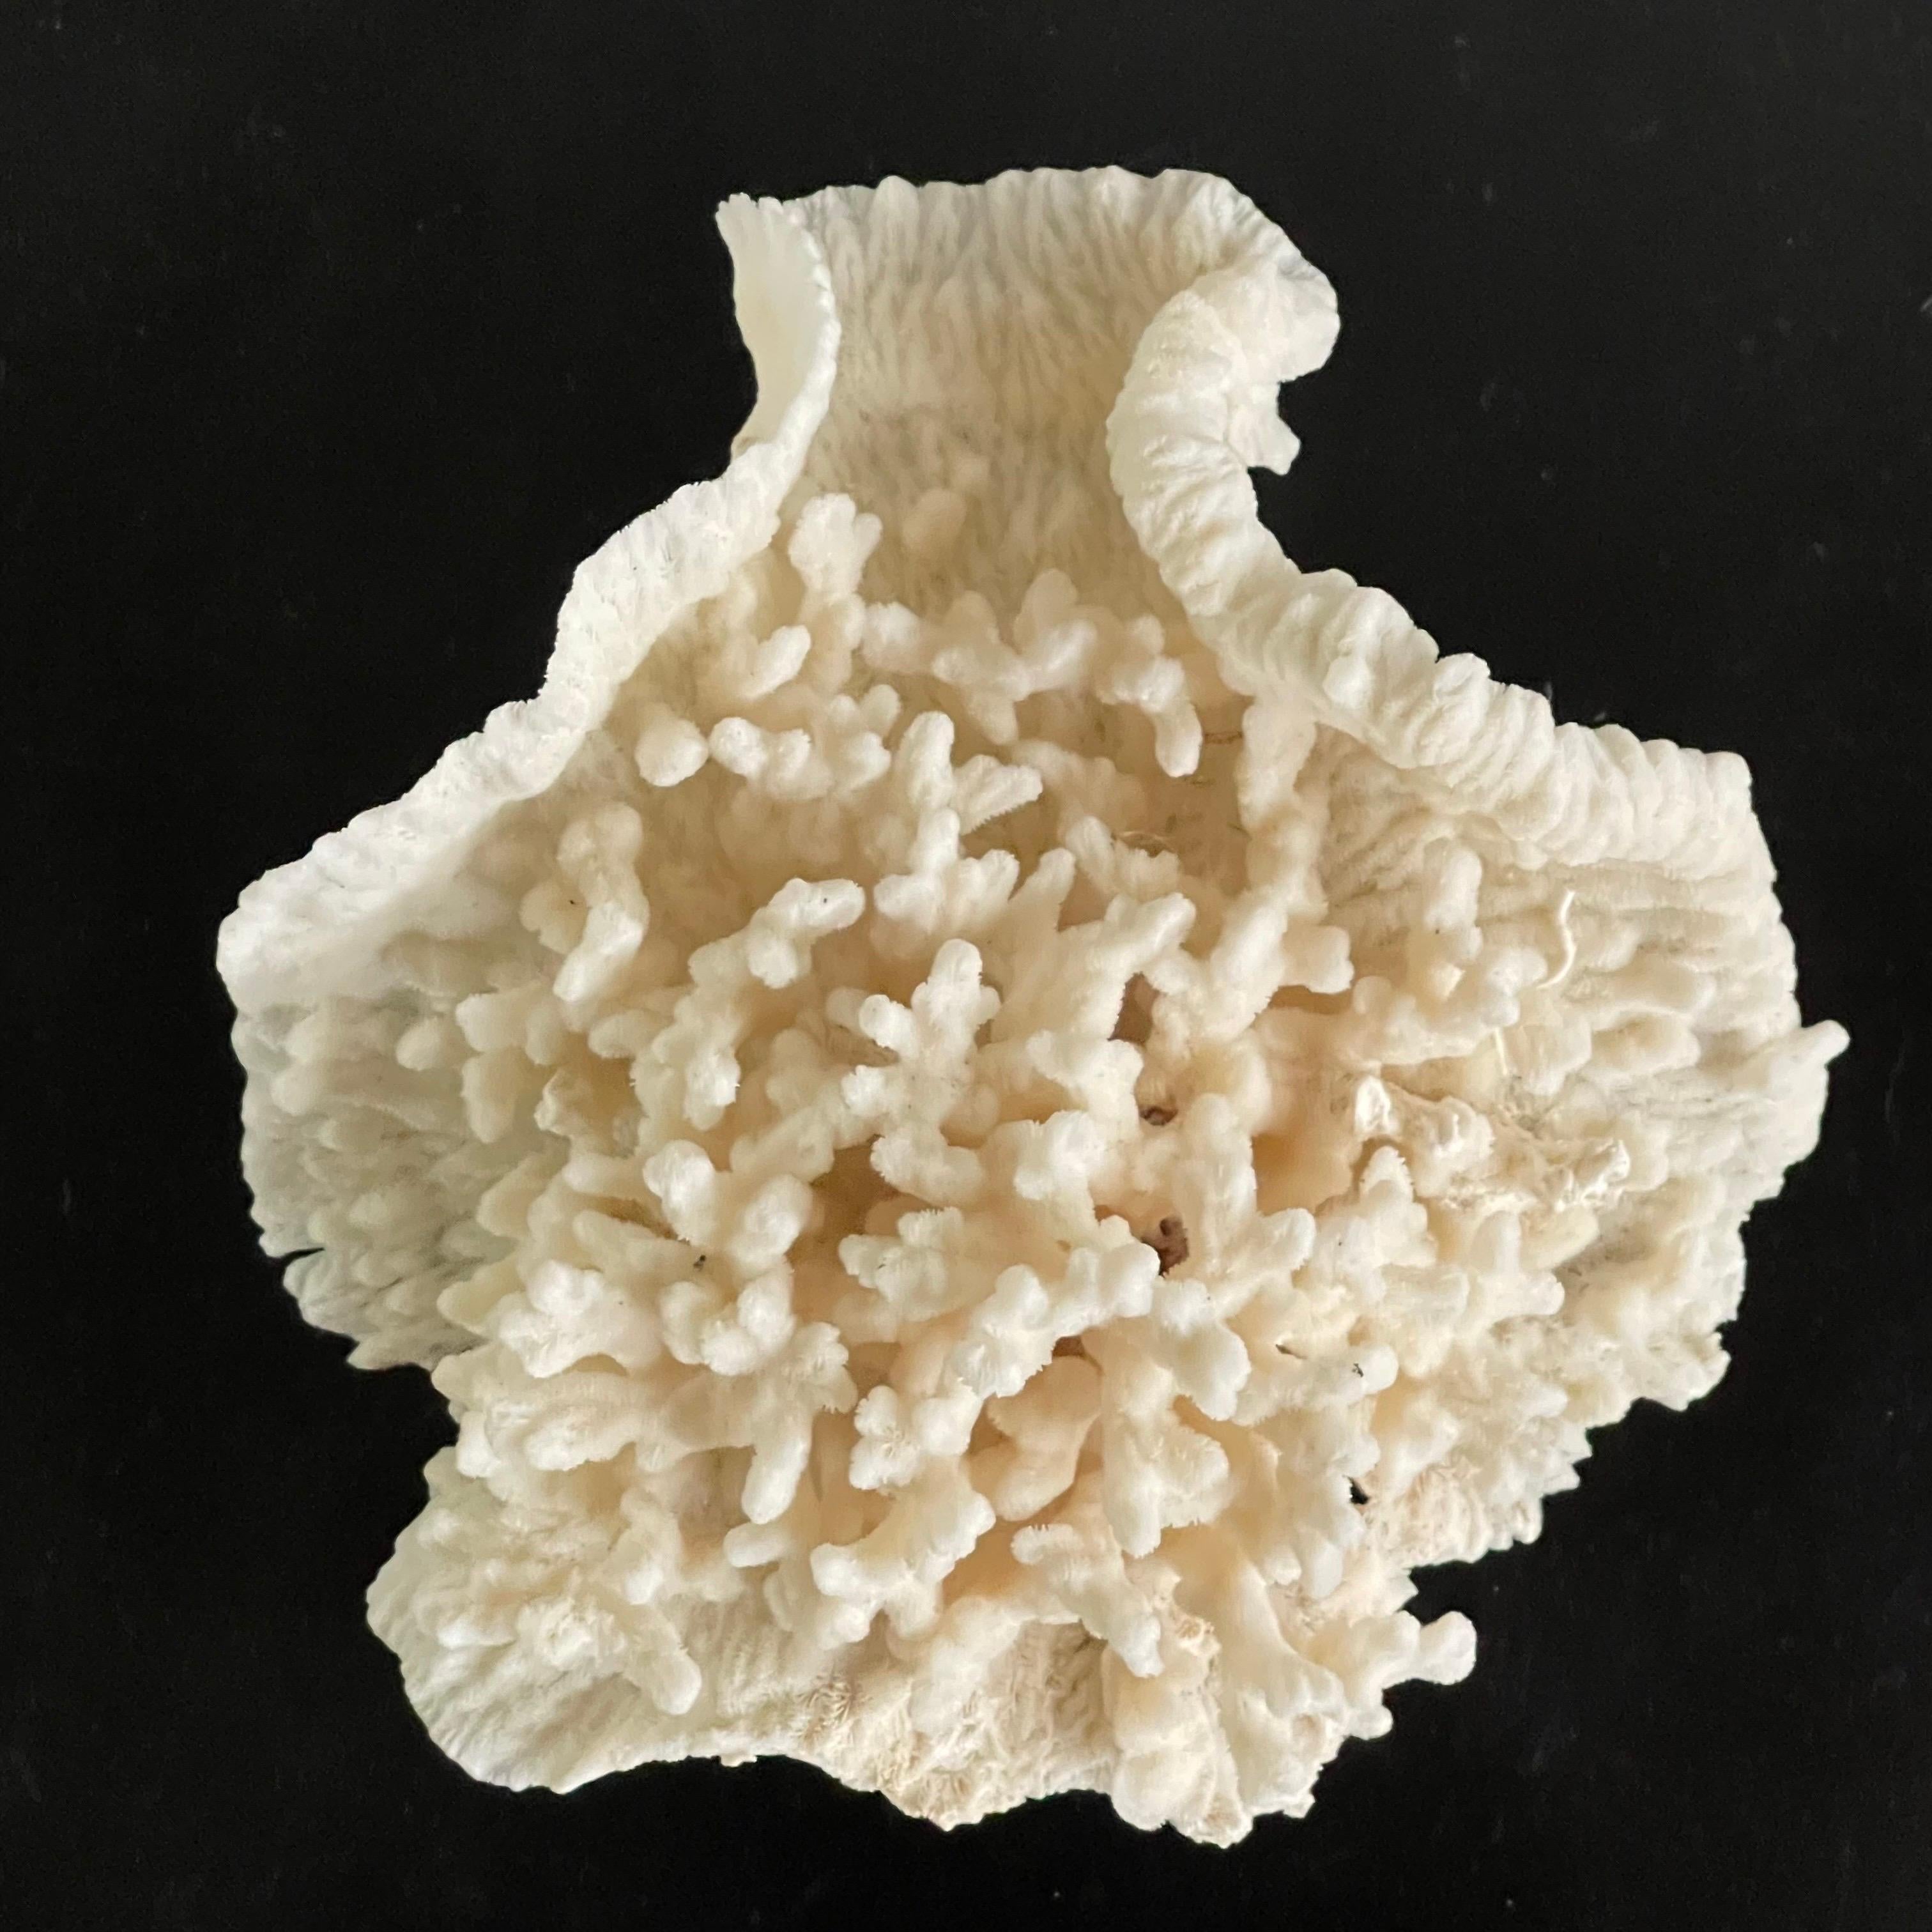 American Vintage Natural Merulina White Coral Specimen For Sale